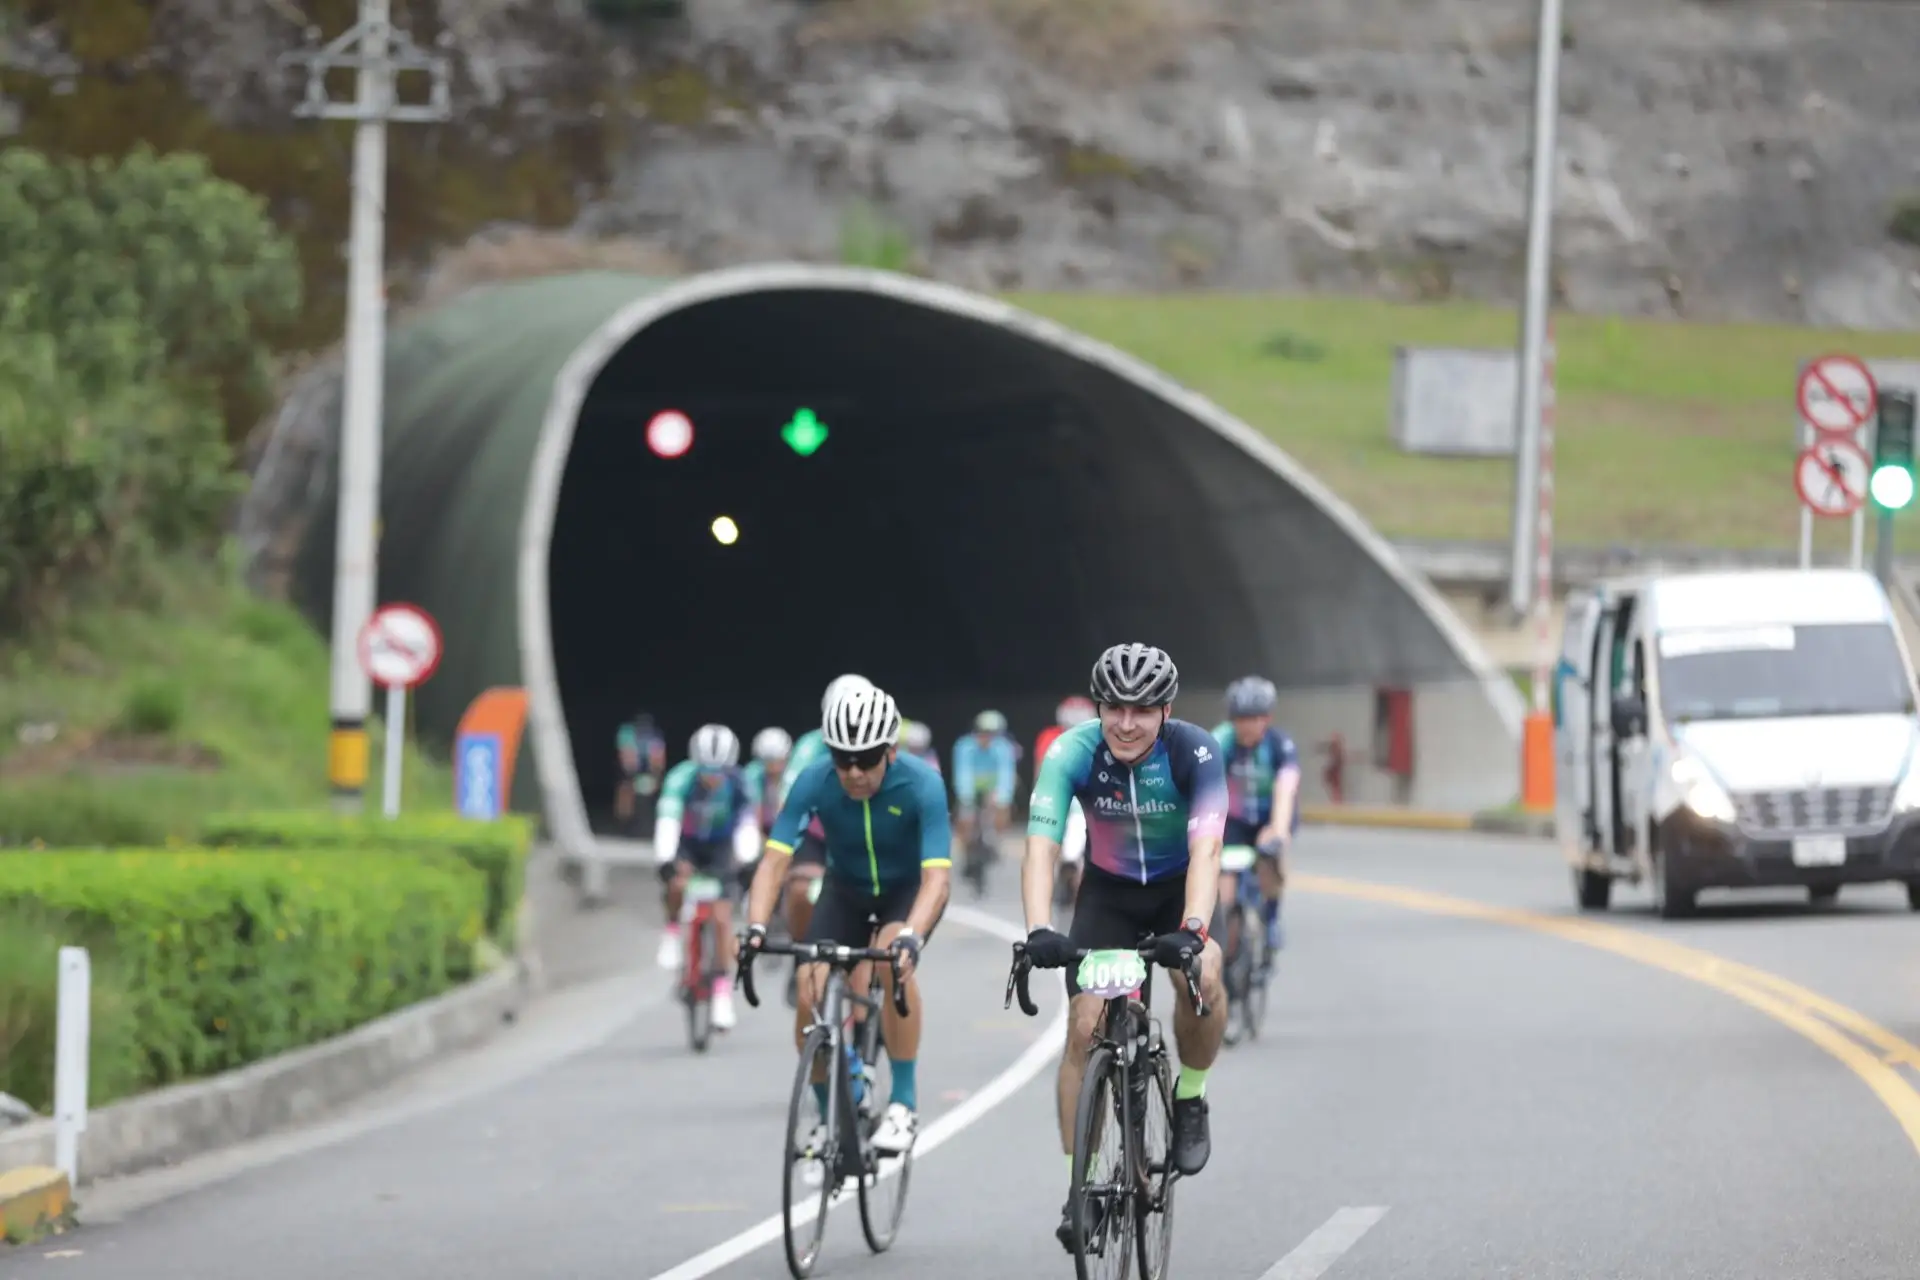 Ruta Colombia cierres viales - Porqué esta cerrada la vía El Retiro - Medellín - Entre Ceja y Ceja 2